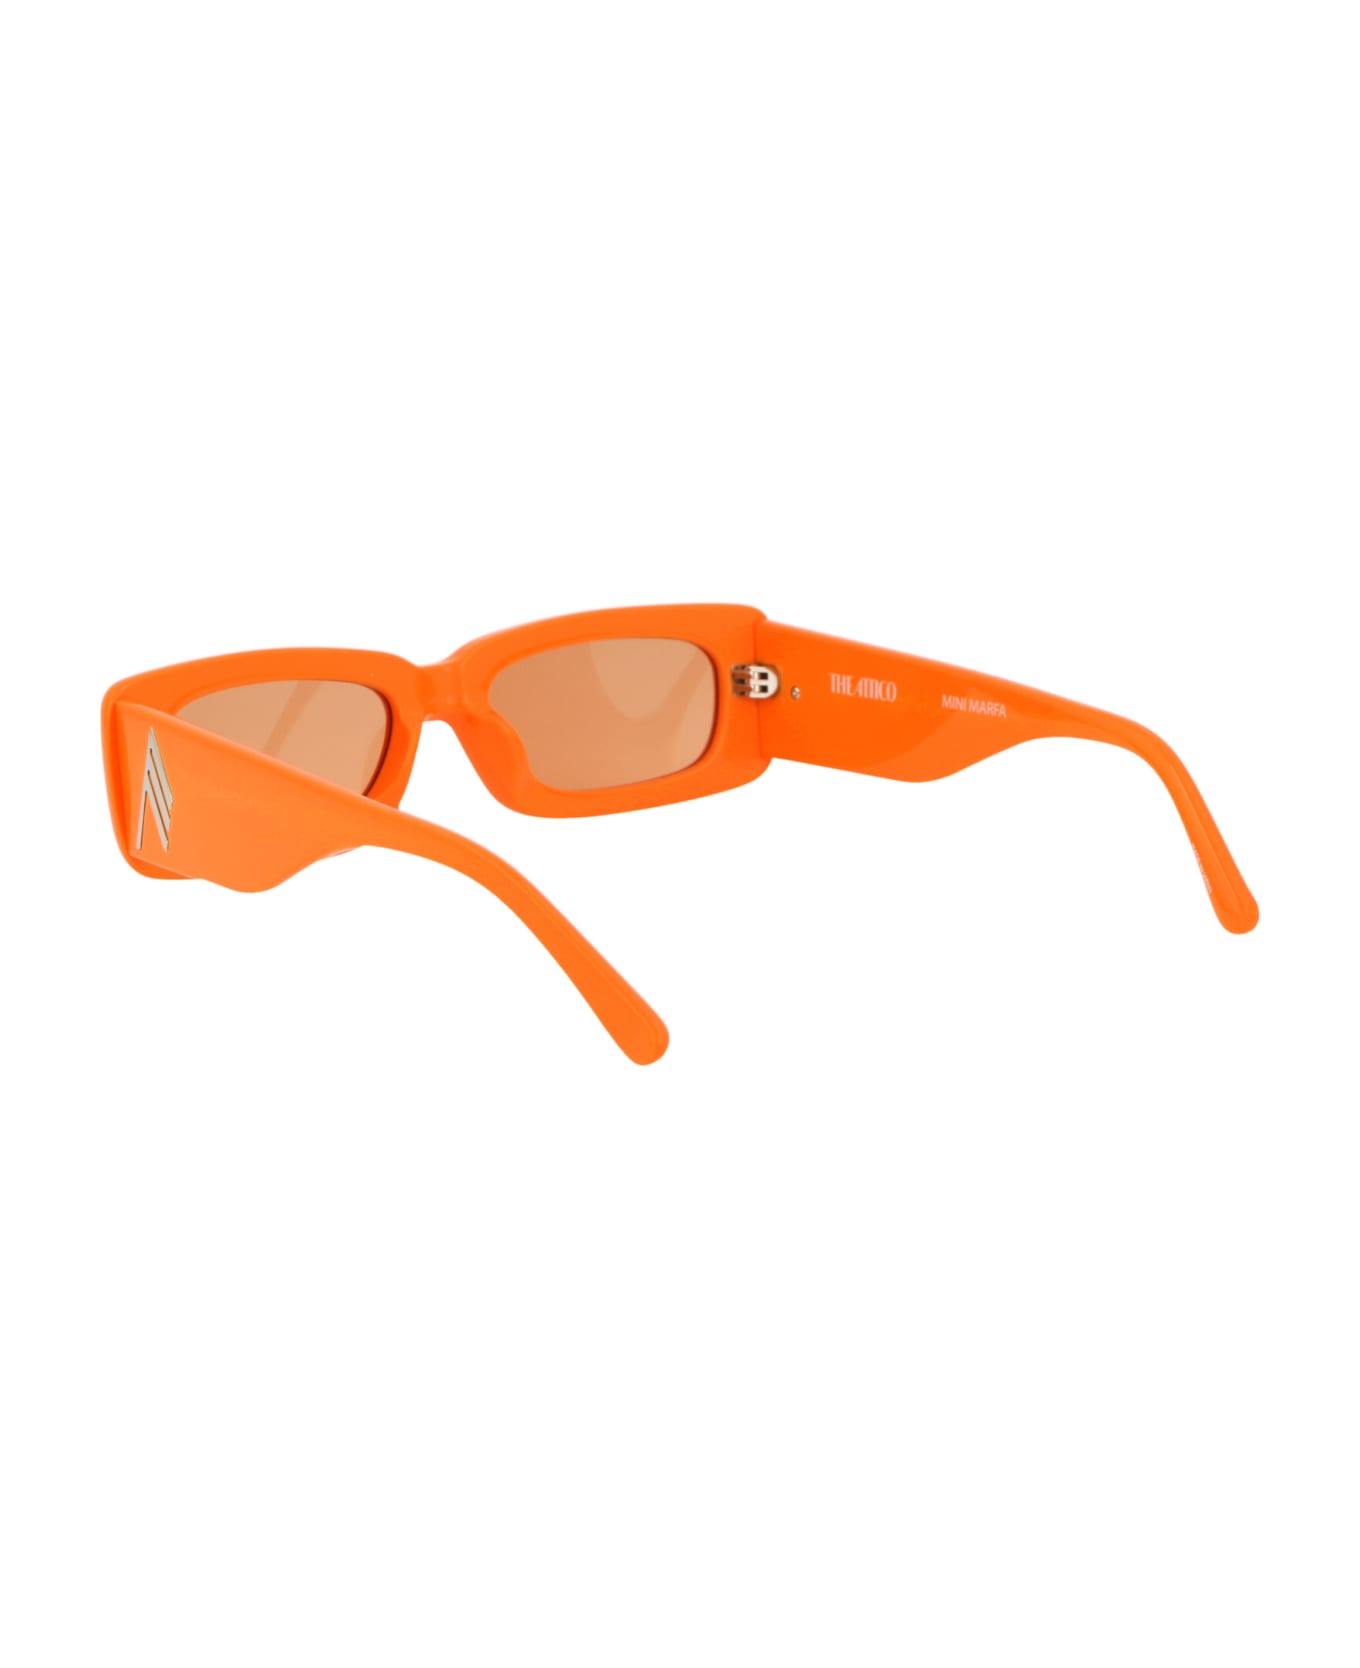 The Attico Mini Marfa Sunglasses - ORANGE/SILVER/ORANGE サングラス